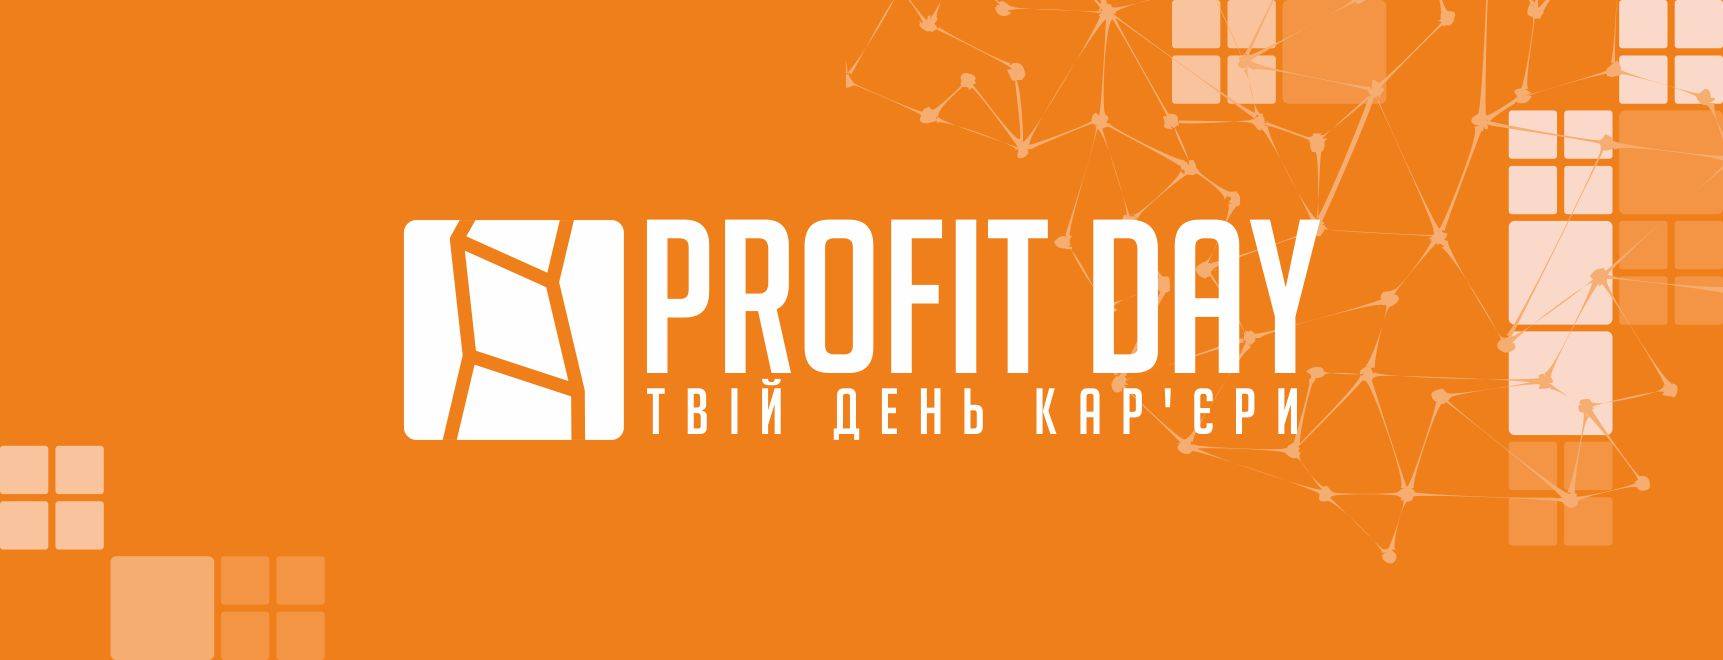 Пропонуємо стати партнером Всеукраїнського проекту «День кар’єри»